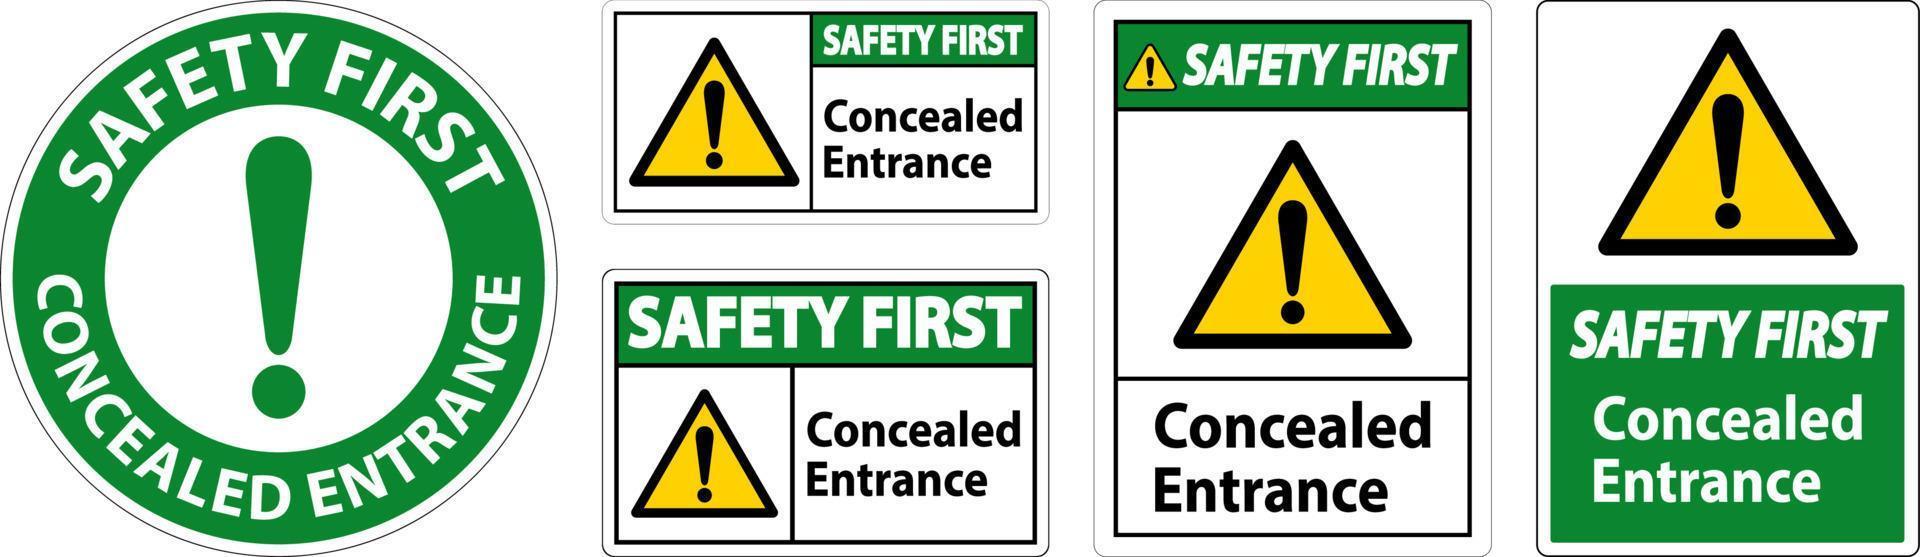 Safety First Label verstecktes Eingangsschild auf weißem Hintergrund vektor